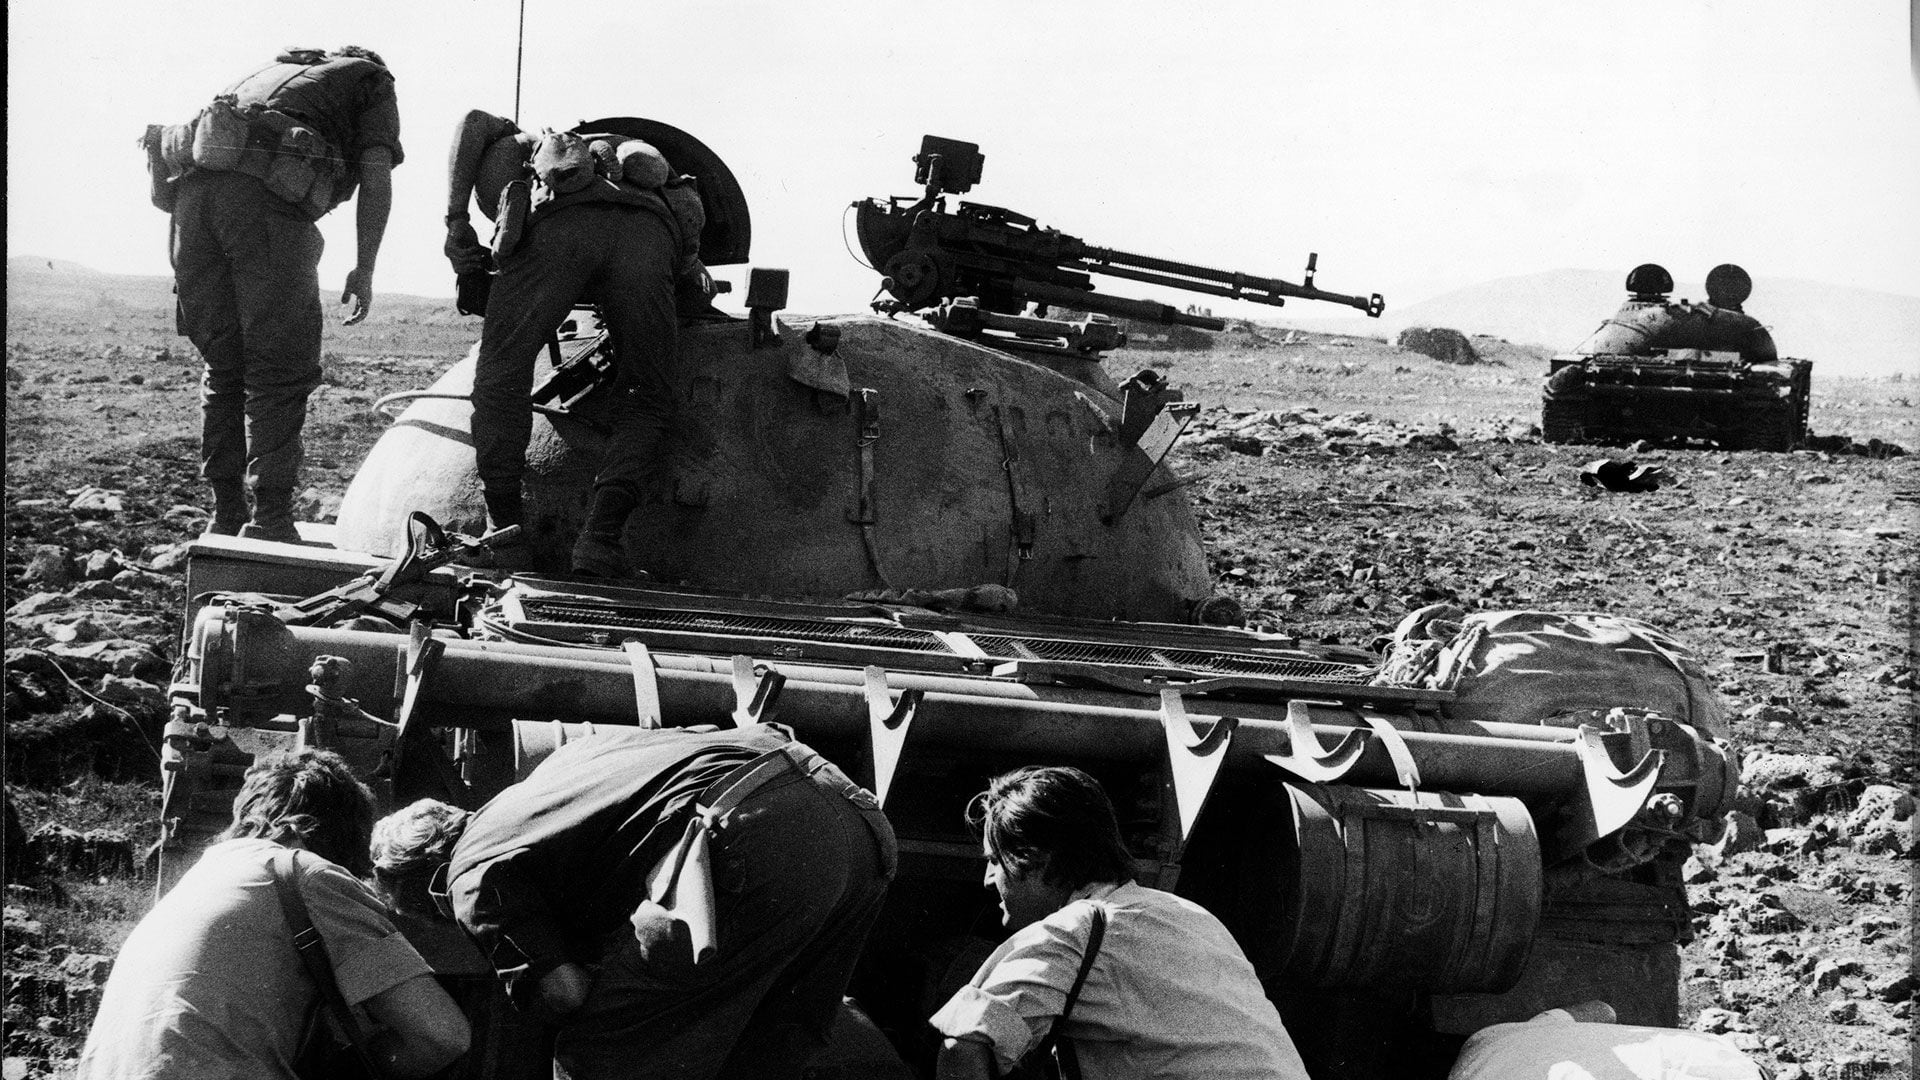 Un conductor de tanque sirio herido escondido bajo su tanque T-62 de fabricación soviética destruido por los israelíes durante la Guerra del Yom Kippur, octubre de 1973. Dos sodliers israelíes inspeccionan la torreta del vehículo. (Foto de Hulton Archive/Getty Images)